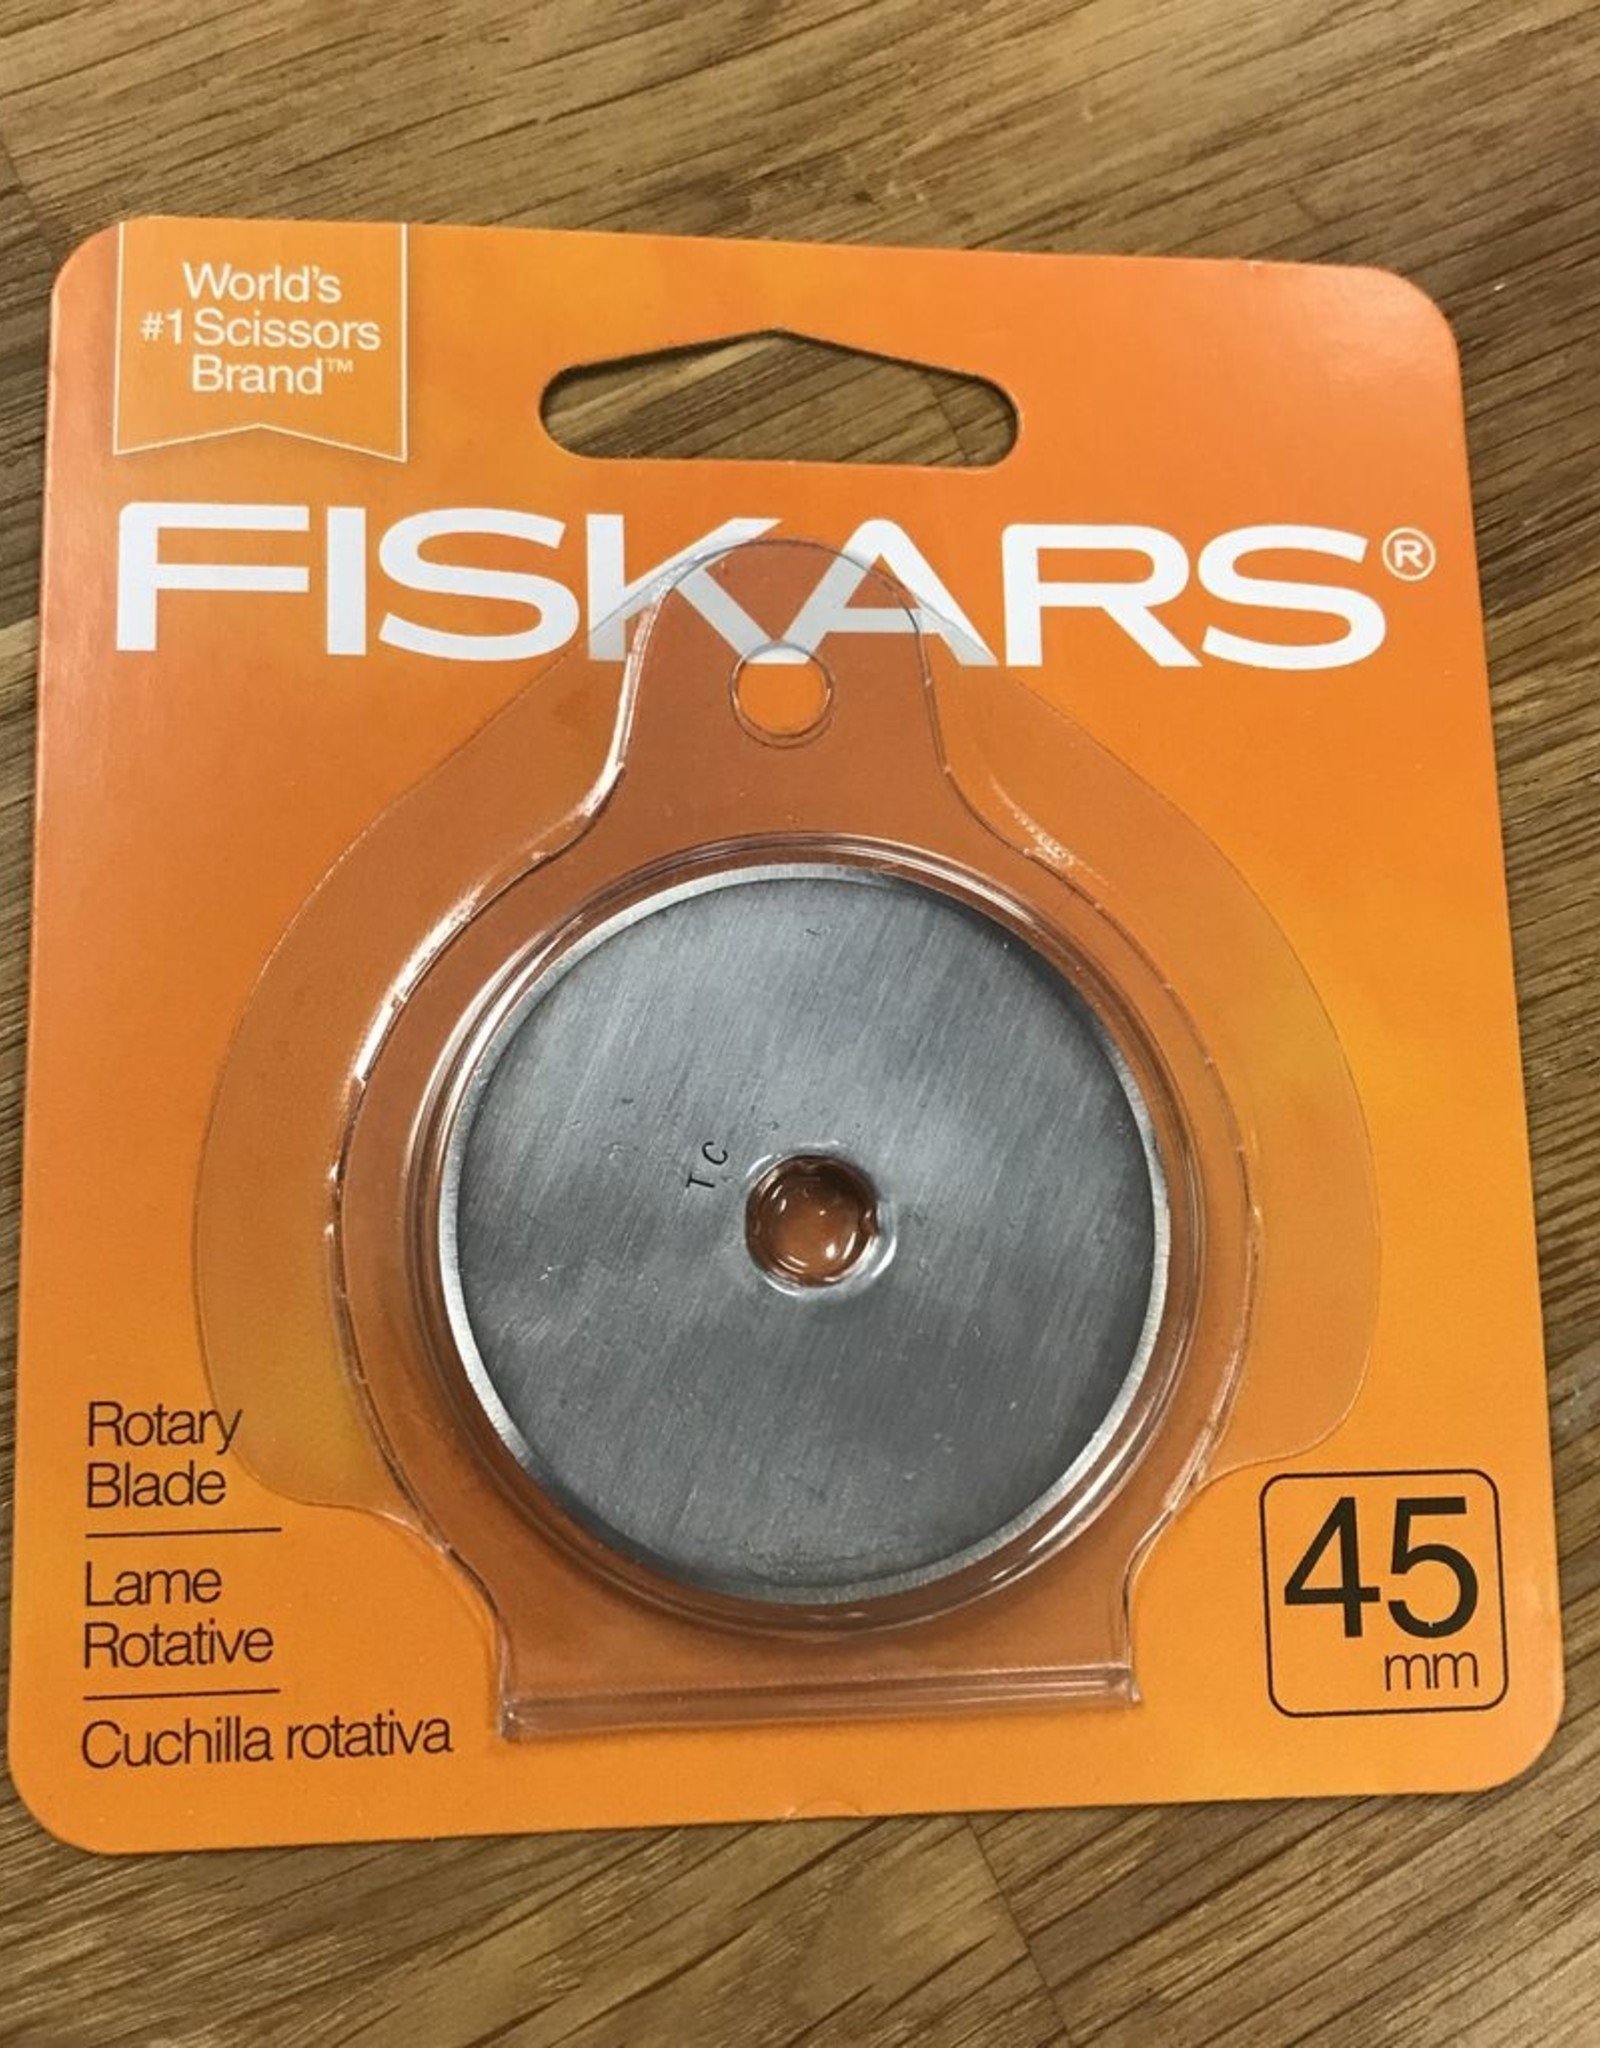 FISKARS Fiskars 45mm Straight Rotary Blade